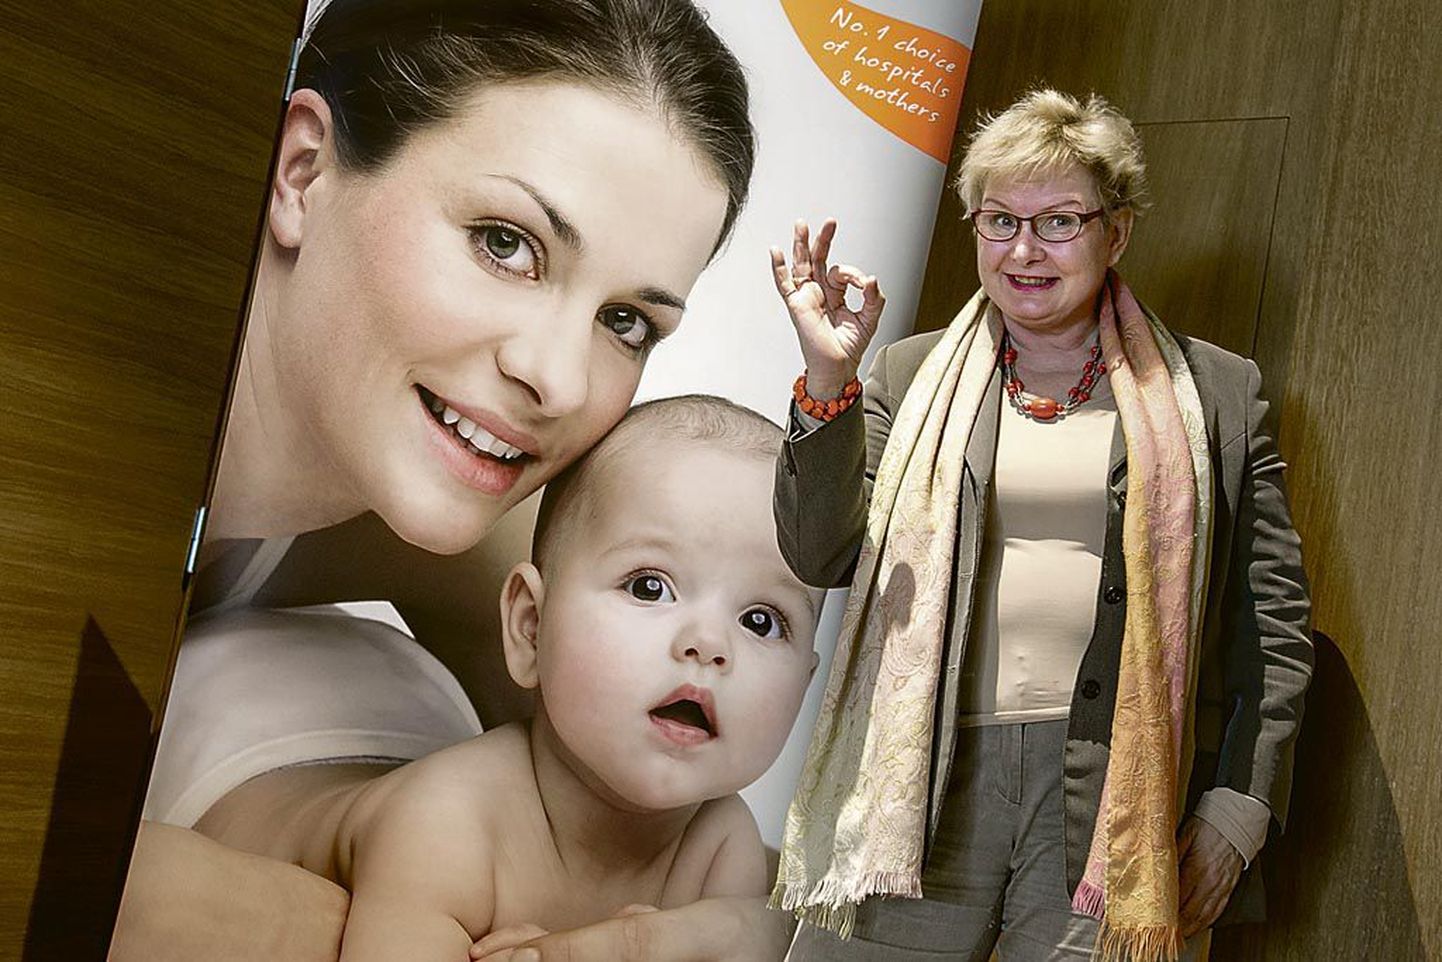 Soome leiutaja ja ämmaemand Eija Pessinen soovib, et tema leiutis võtaks naistelt sünnitushirmu ja vähendaks valu.